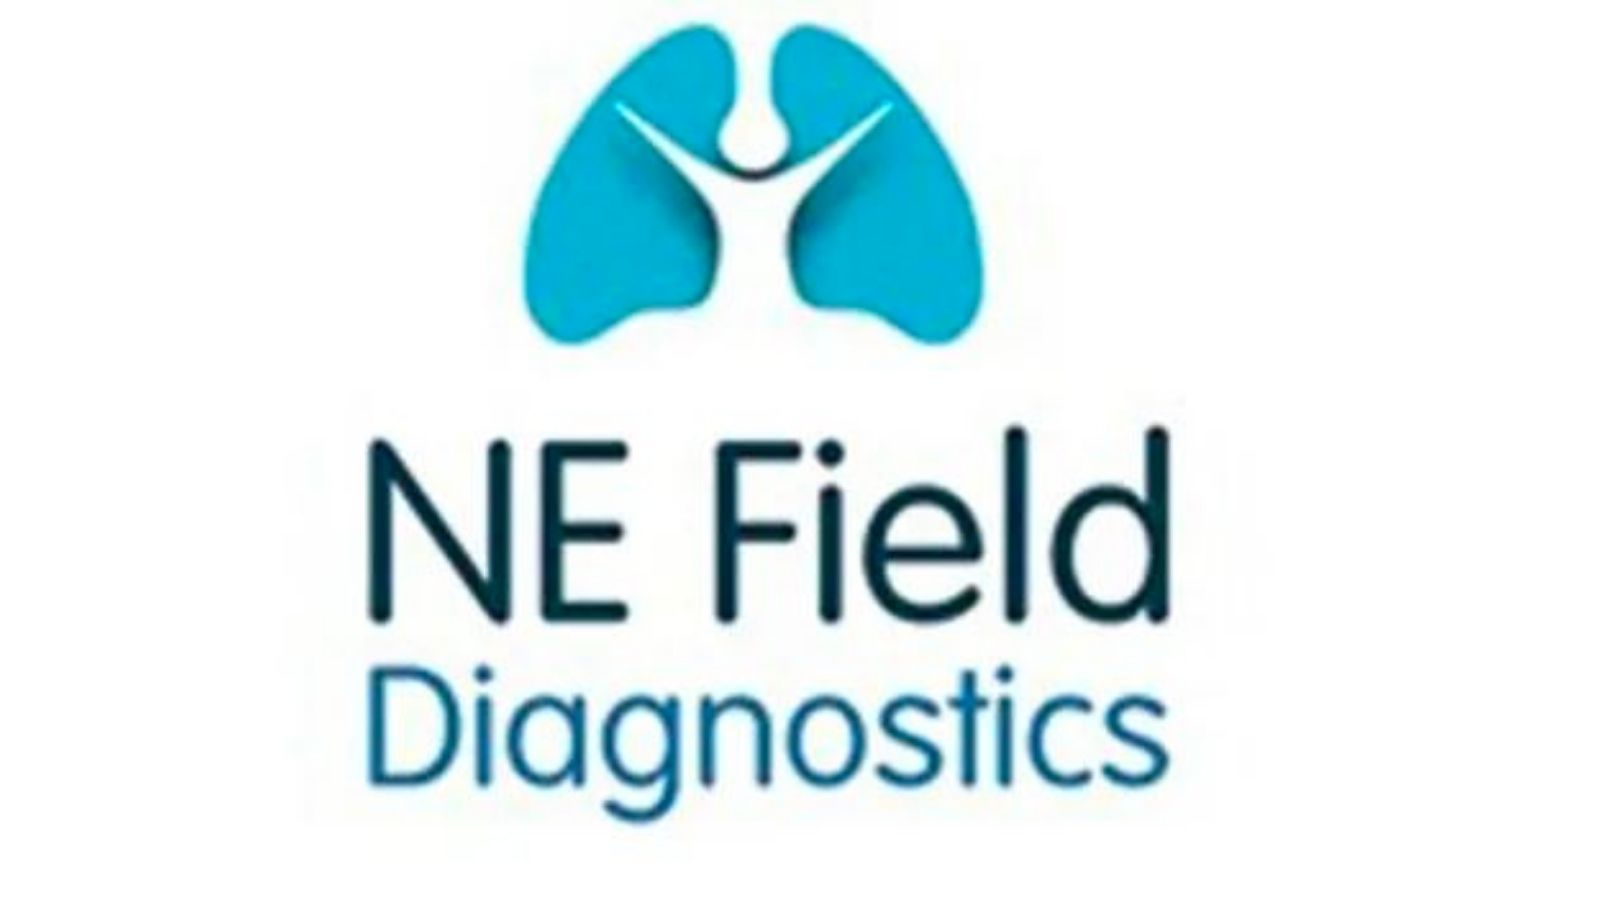 NE Field Diagnostics旨在开发和商业化用于肺功能测试和监测的创新技术